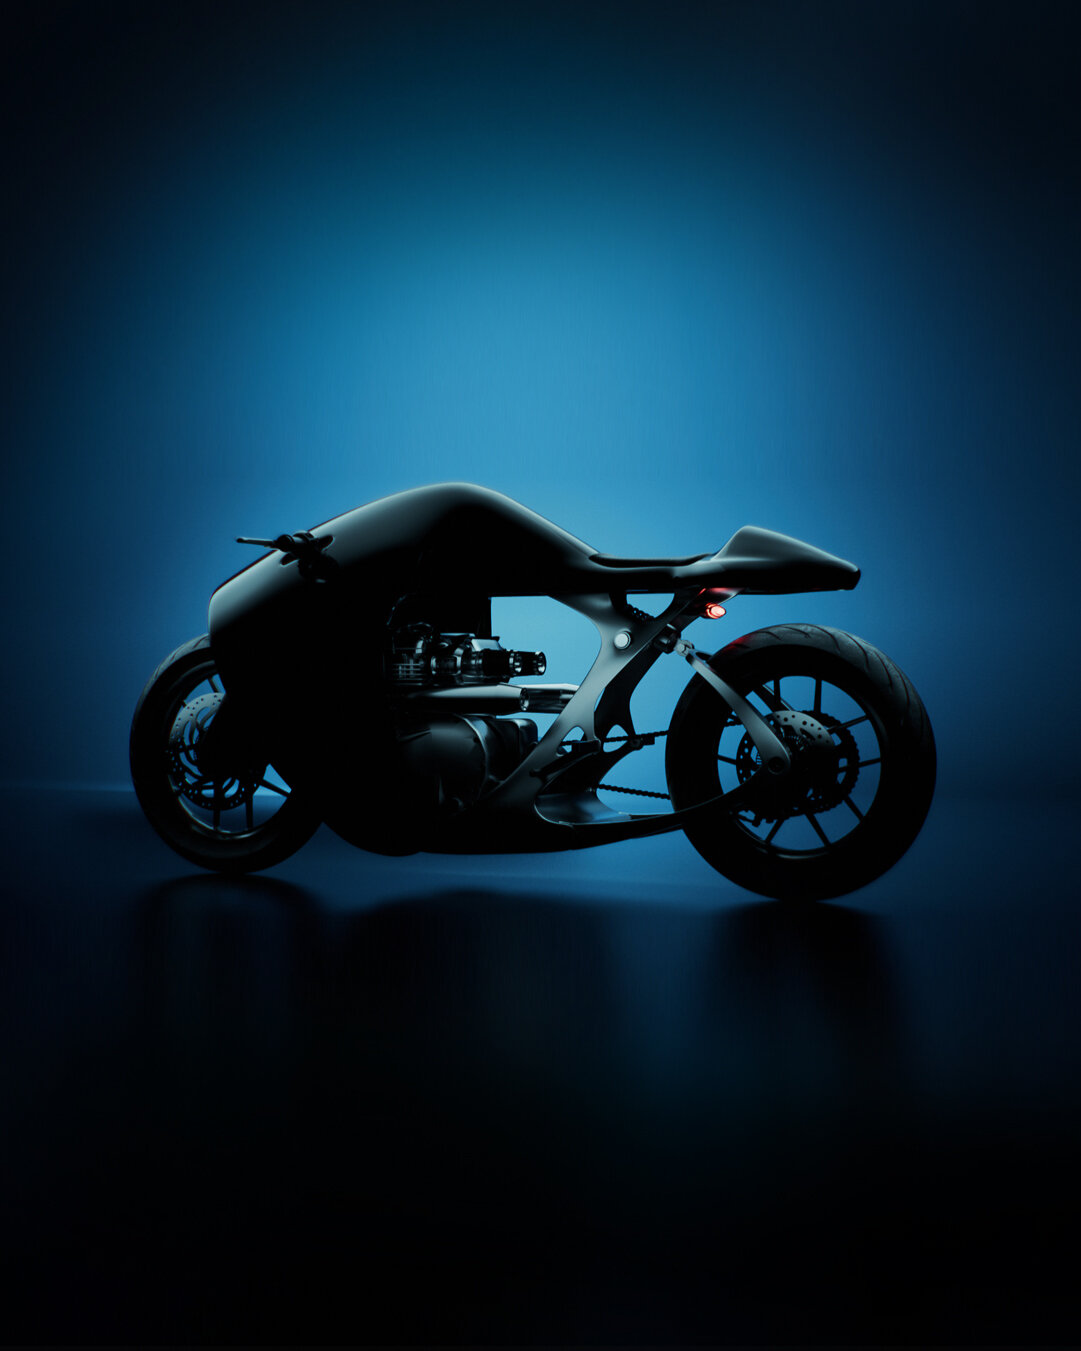 imagen 12 de The Supermarine. La nueva y espectacular motocicleta de Bandit9.